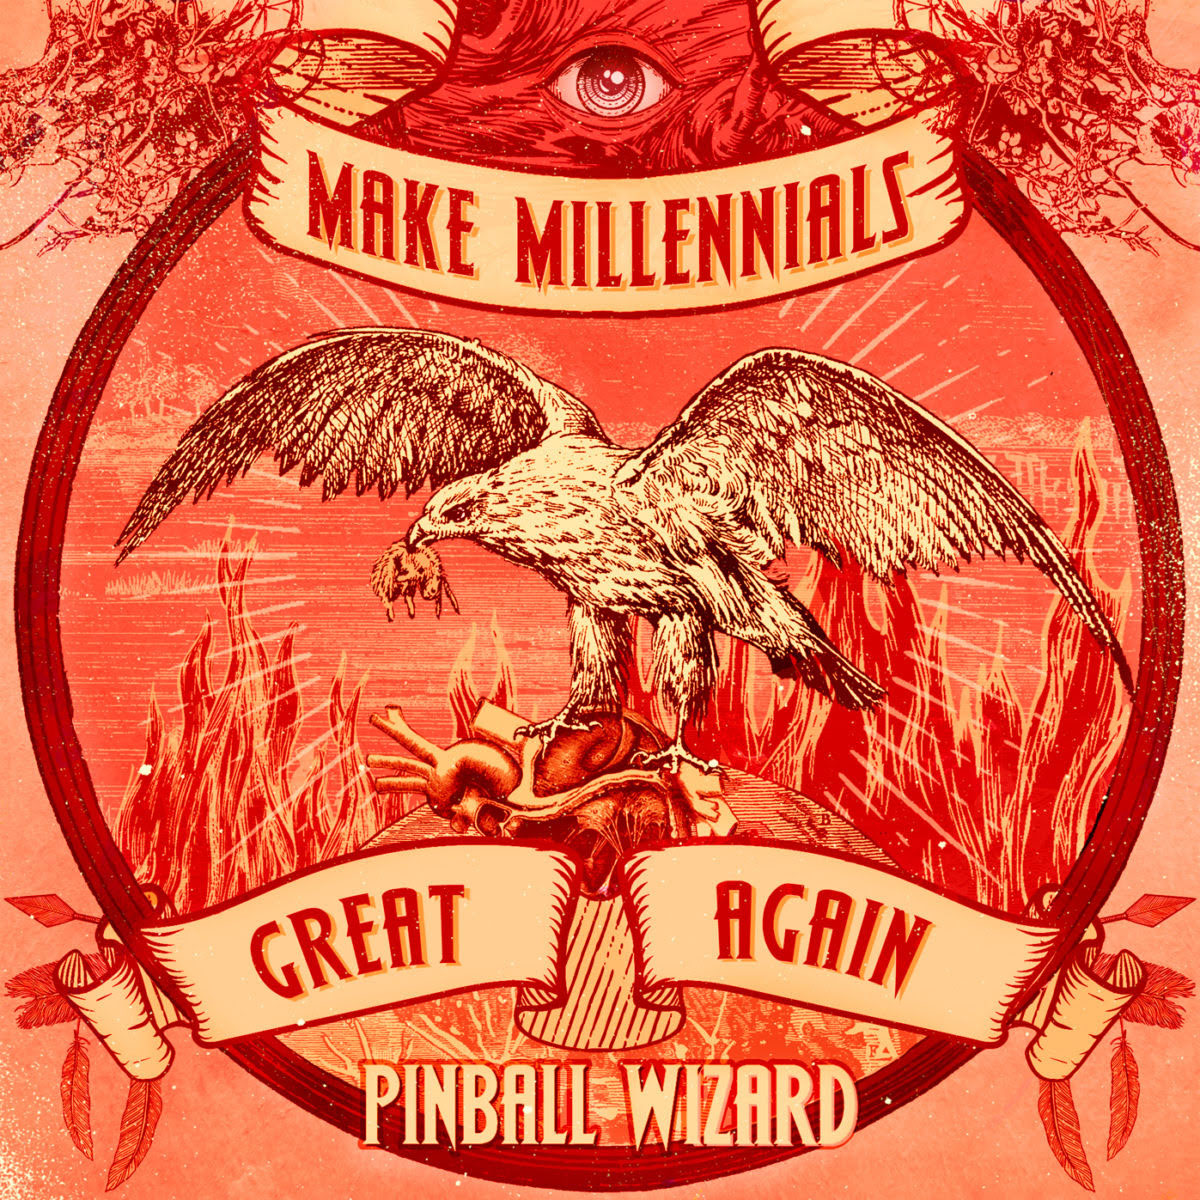 pinball wizard - make millennials great again